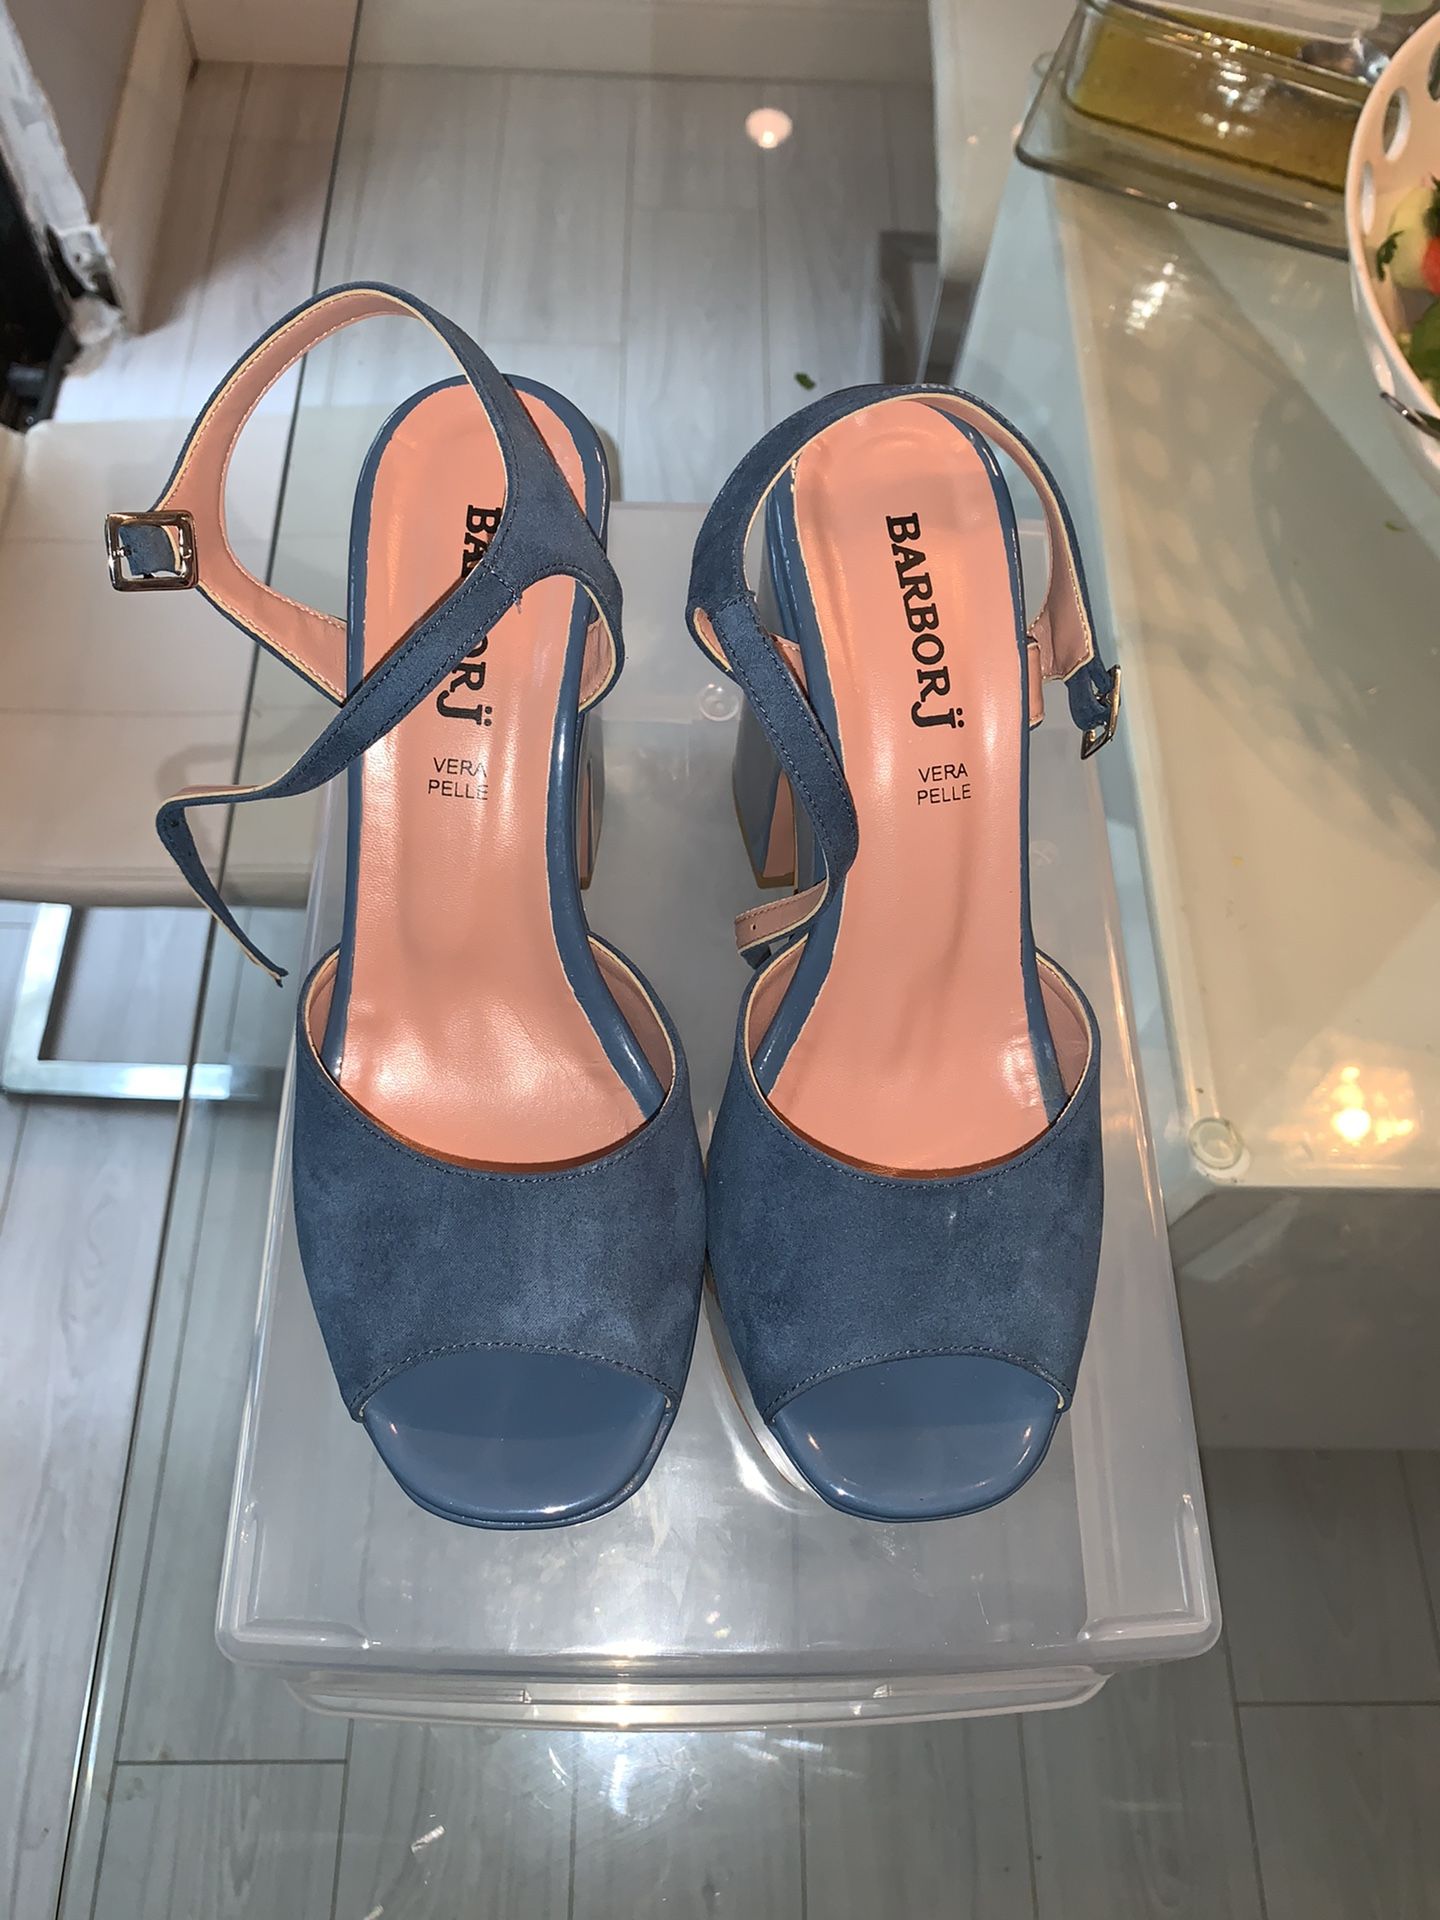 Blue platform sandals-shoes $5